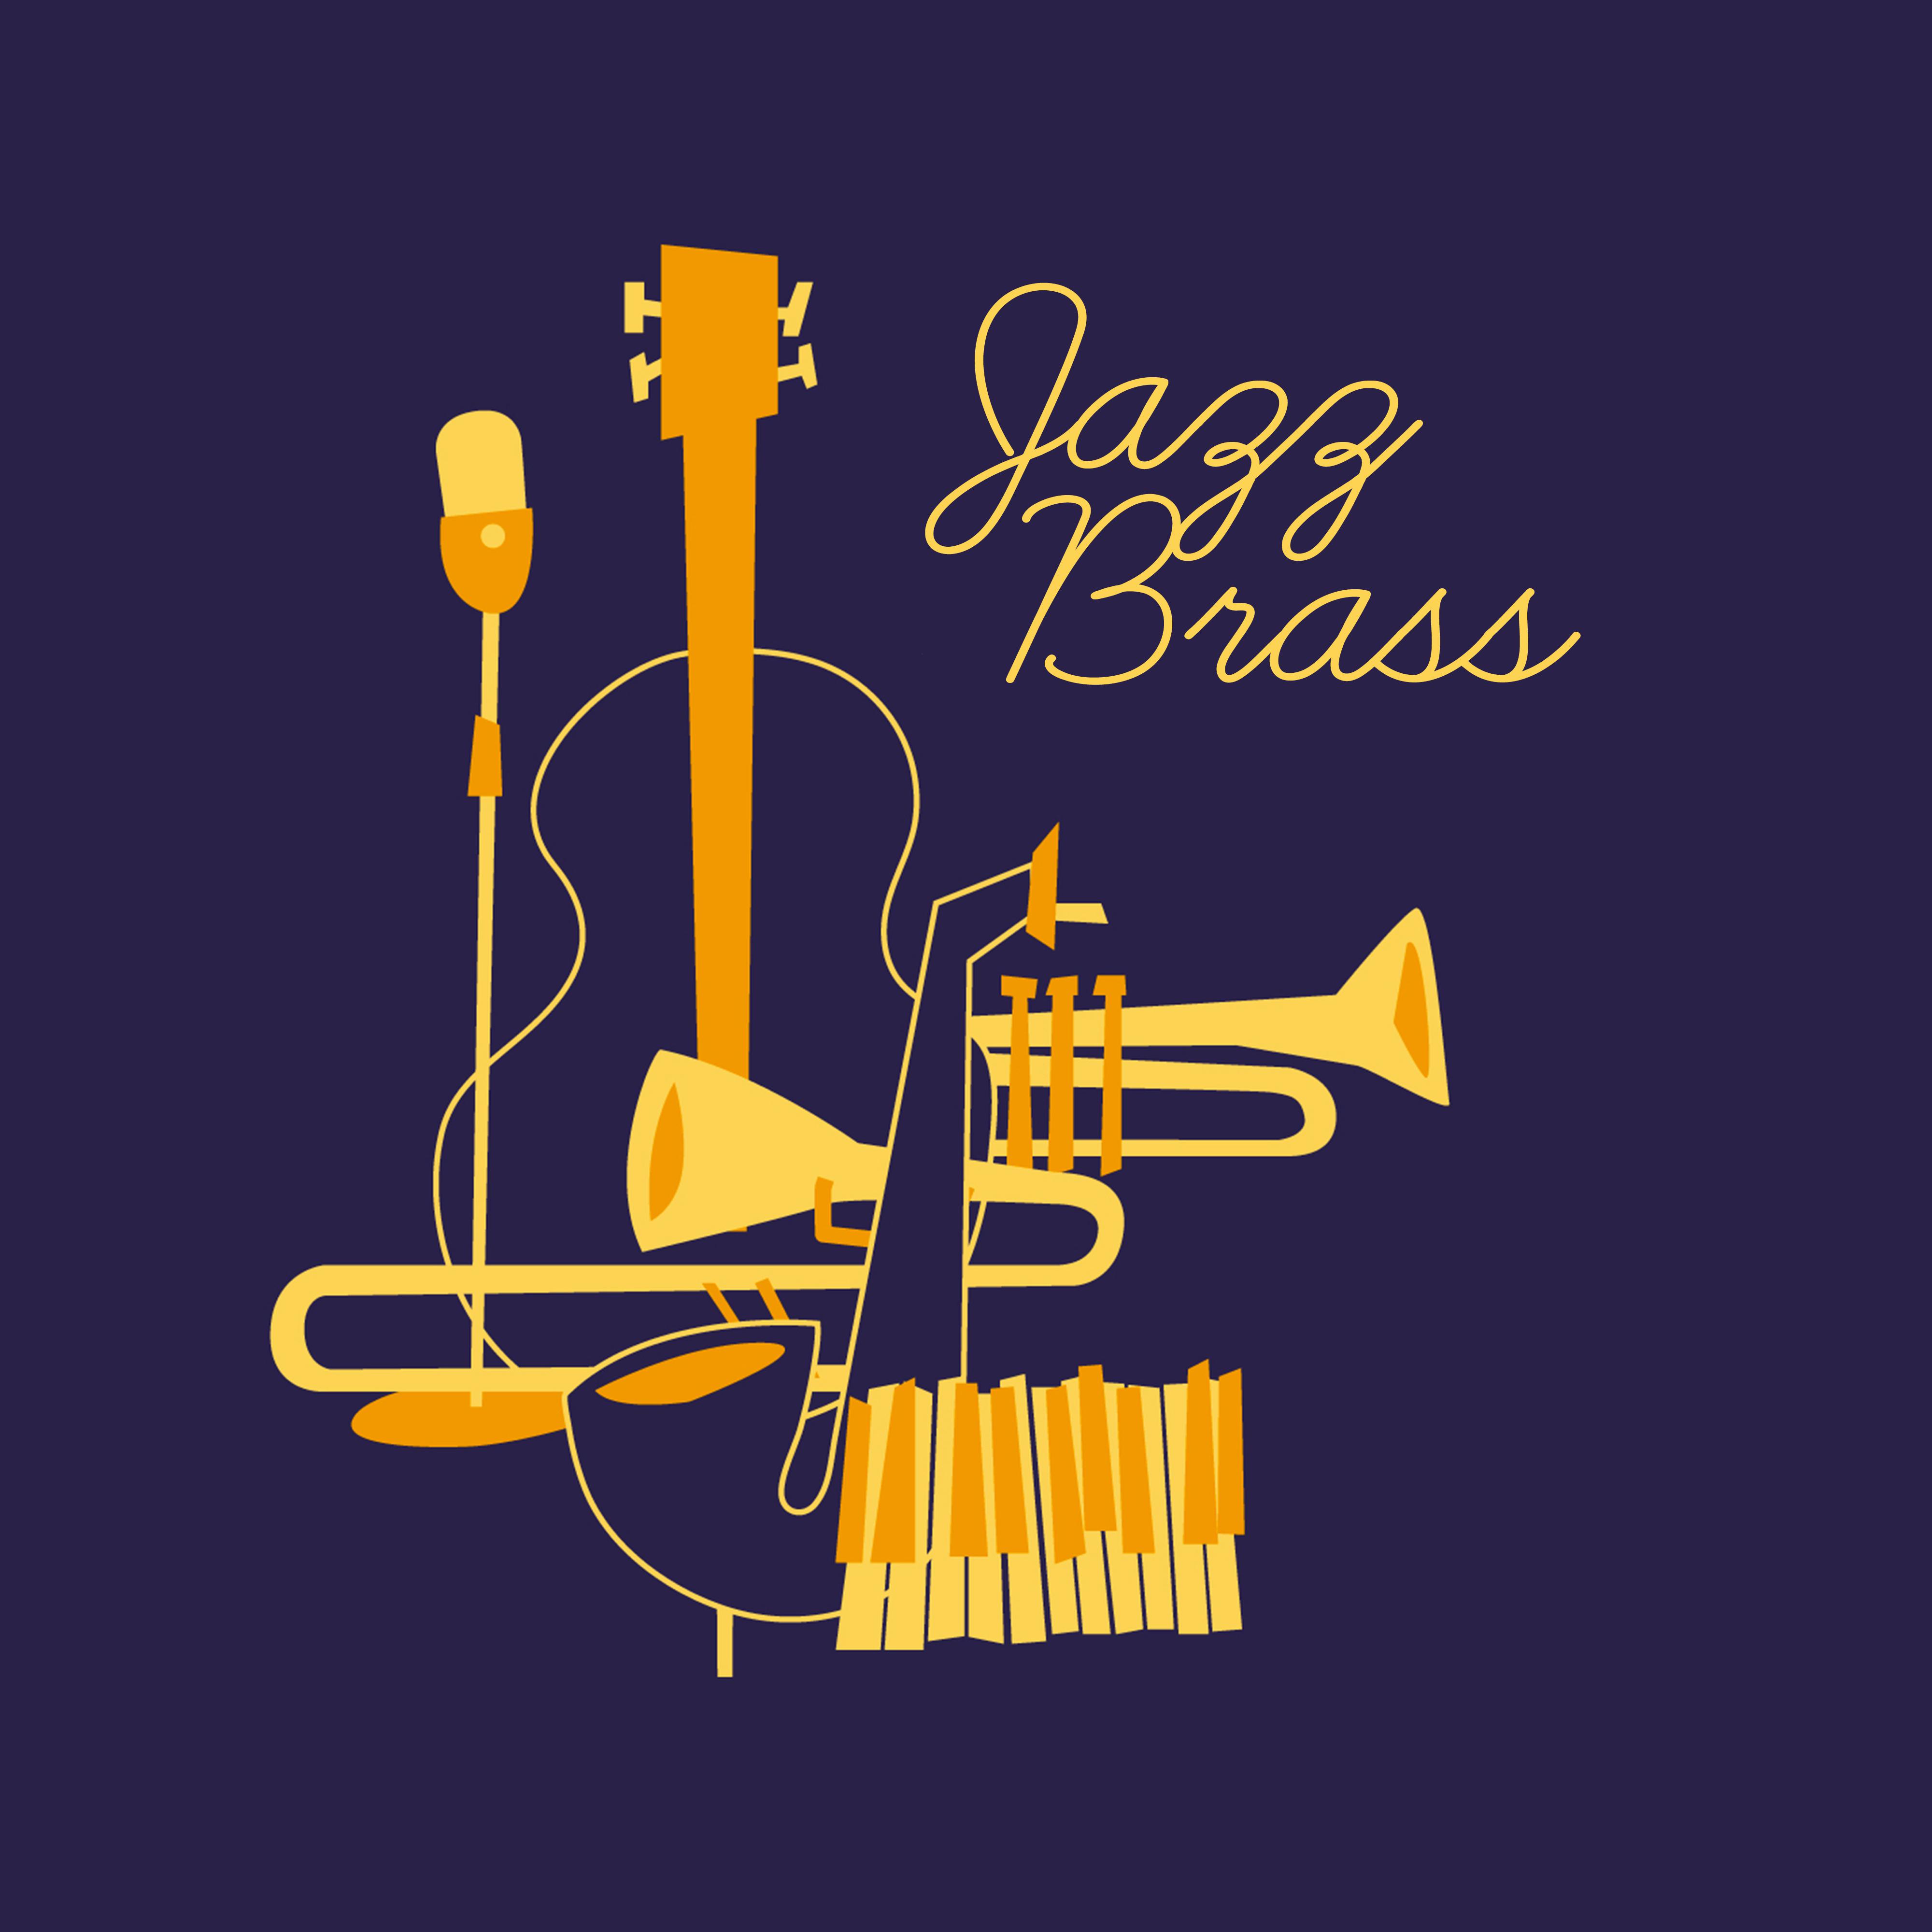 Jazz Brass